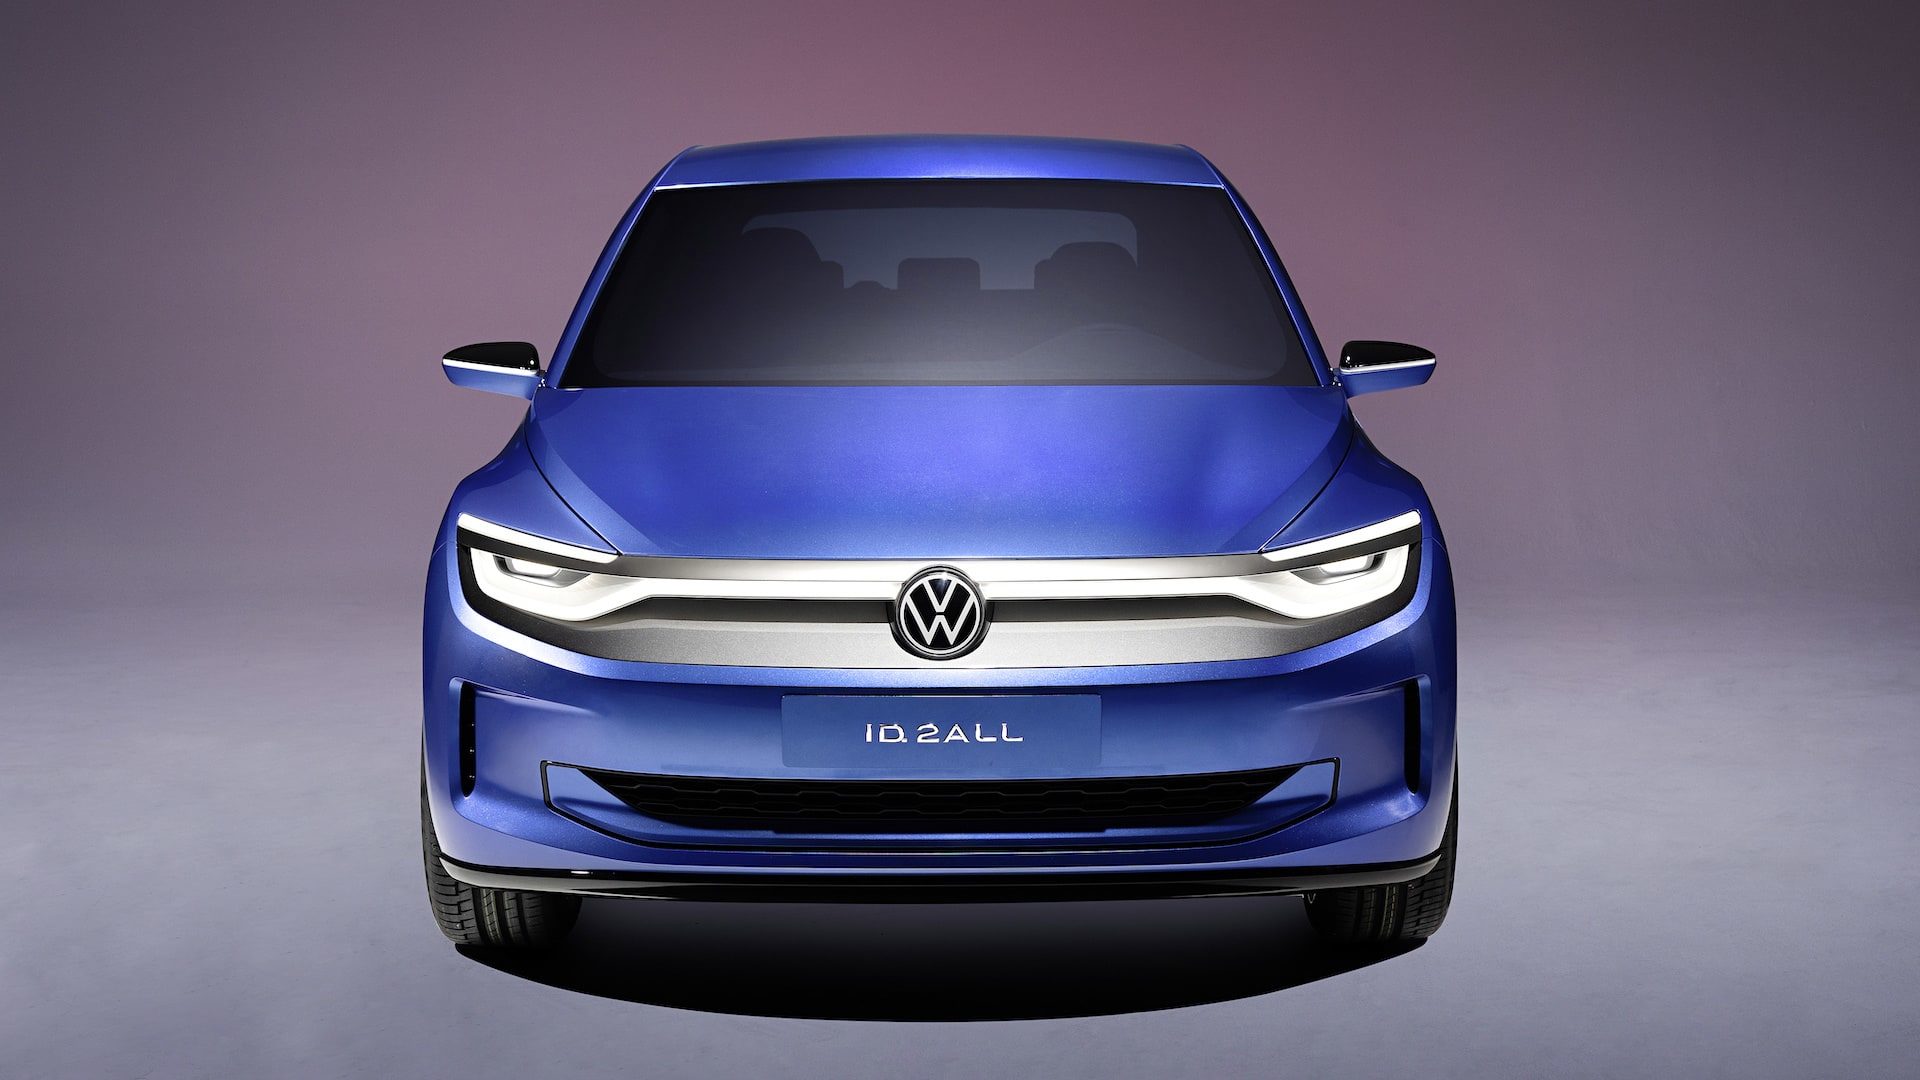 Volkswagen ID 2all Concept